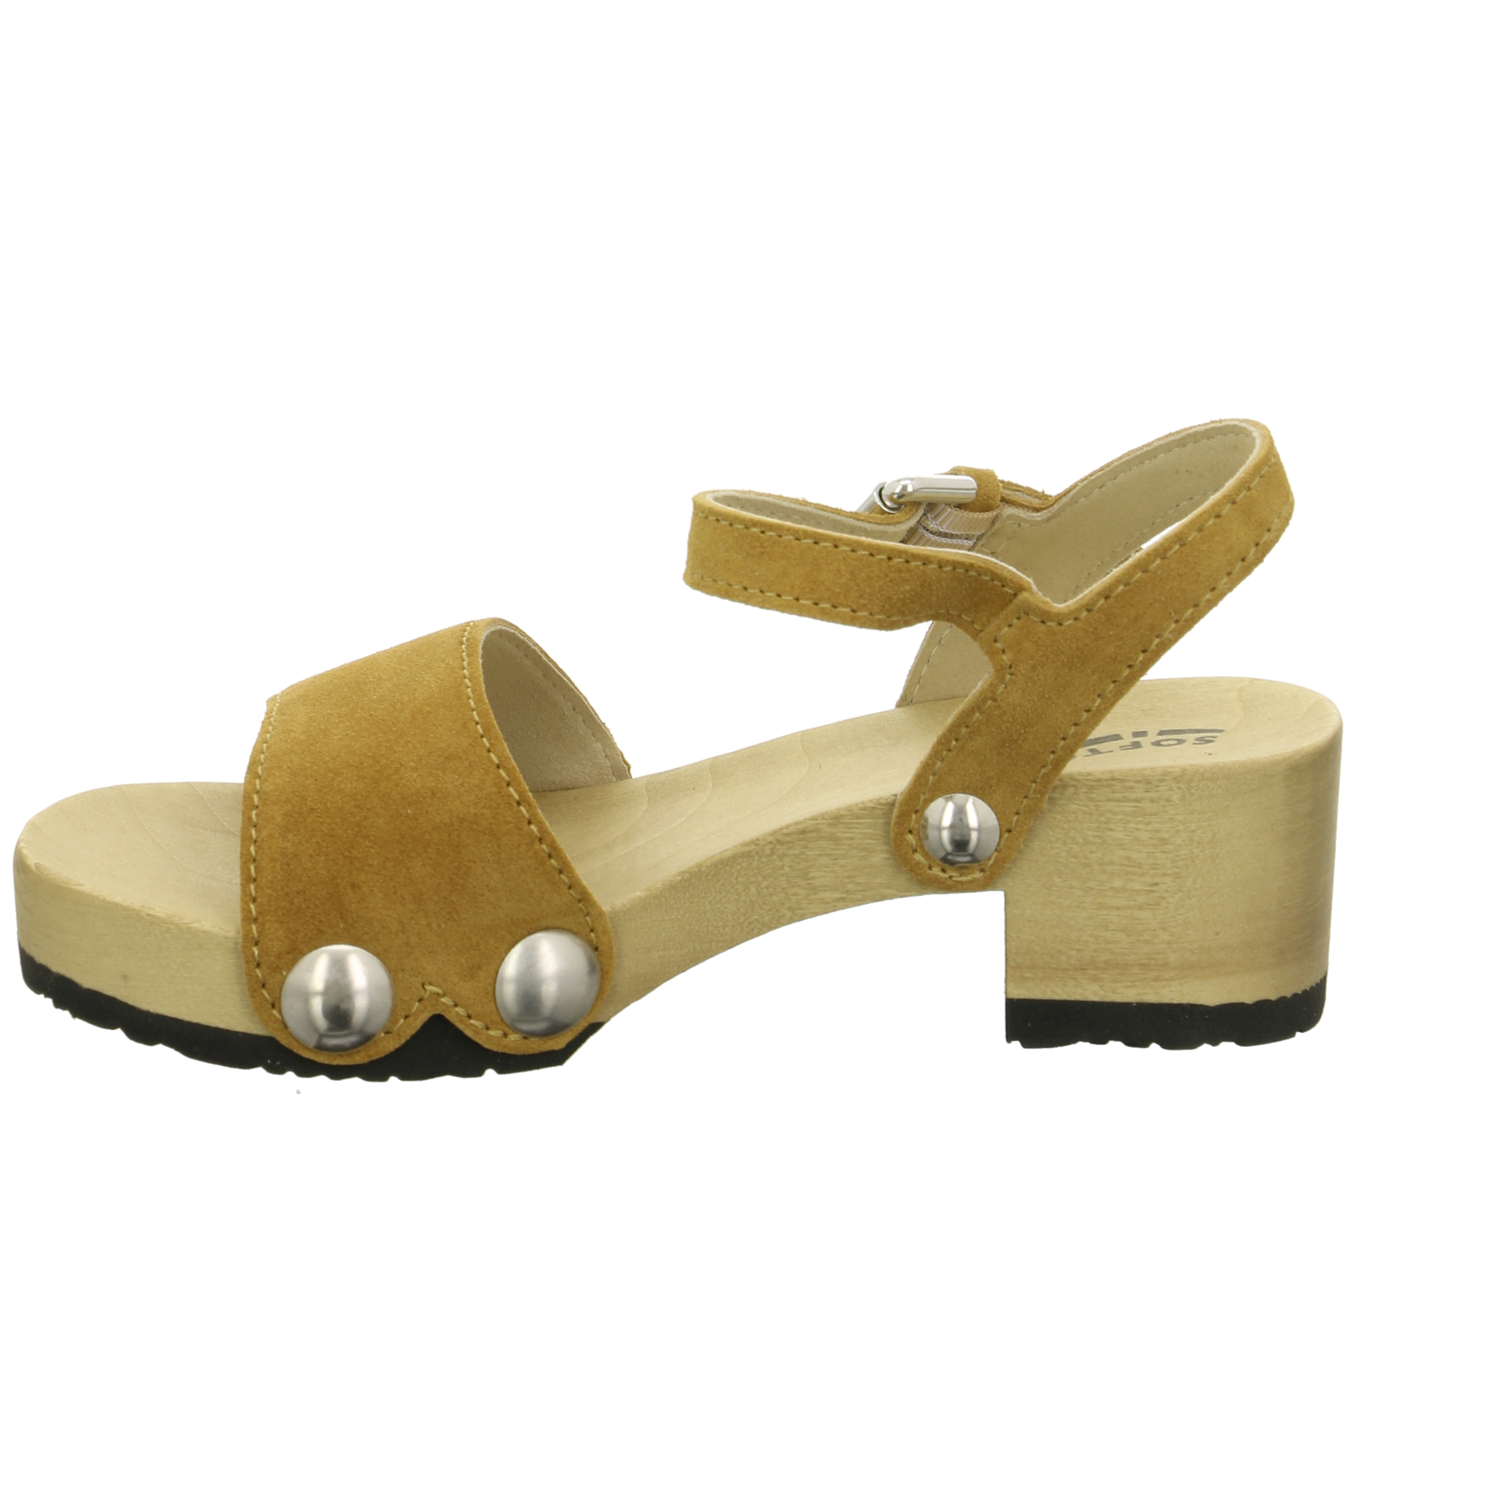 Softclox Sandalette bis 45 mm natur / hell-braun